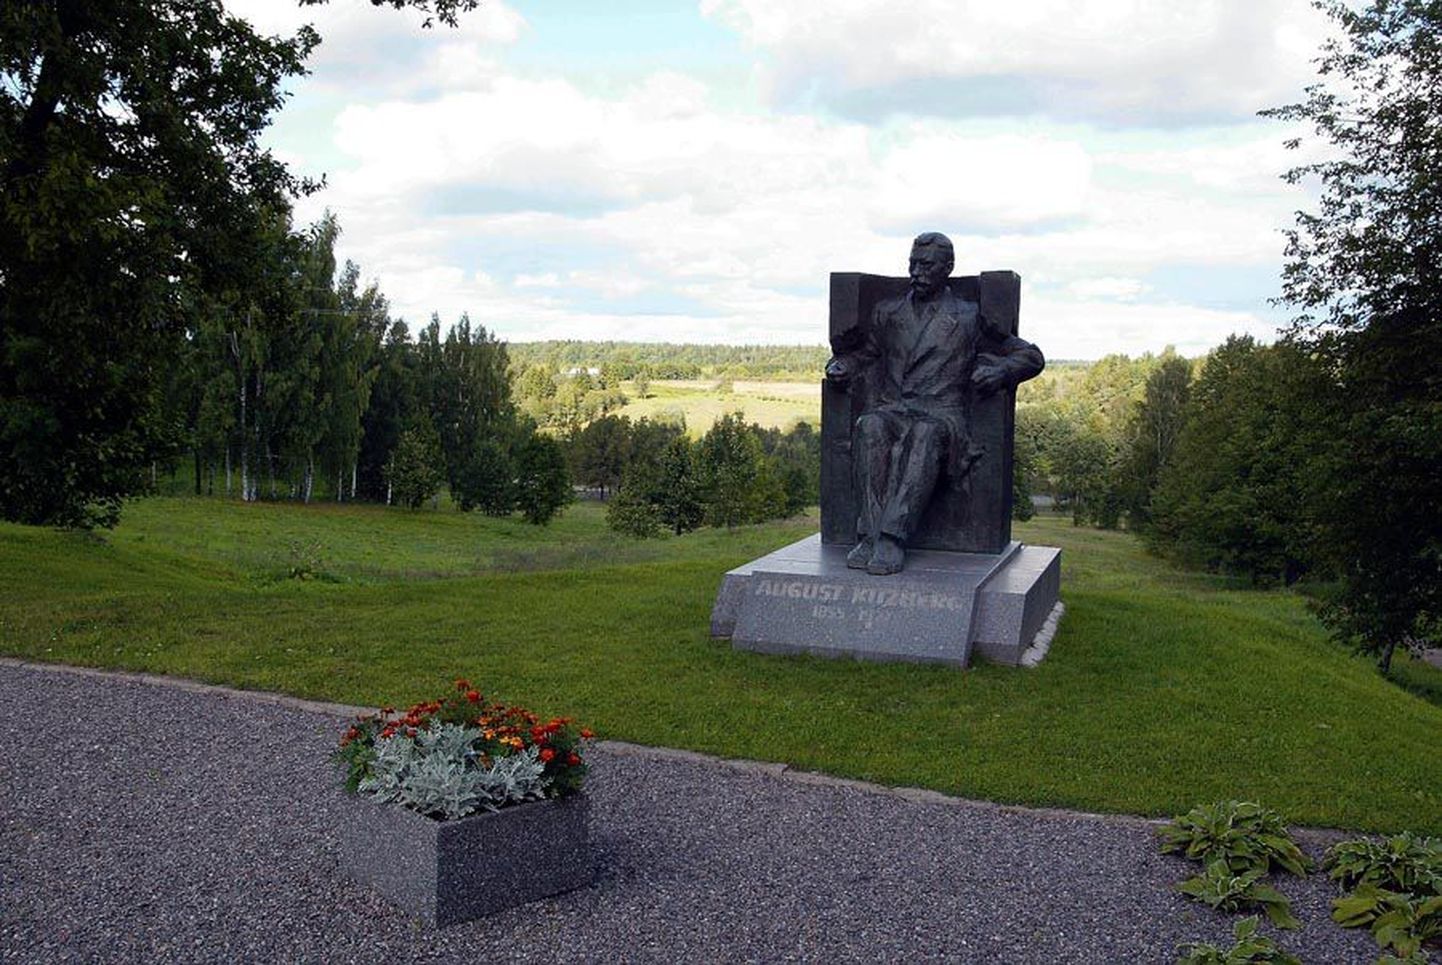 Karksi vald valmistub tegevust täis päeva ja ööga tähistama kohaliku kirjamehe August Kitzbergi 160. sünniaastapäeva. Kitzbergi skulptuur seisab Karksi-Nuias 1990. aastast.